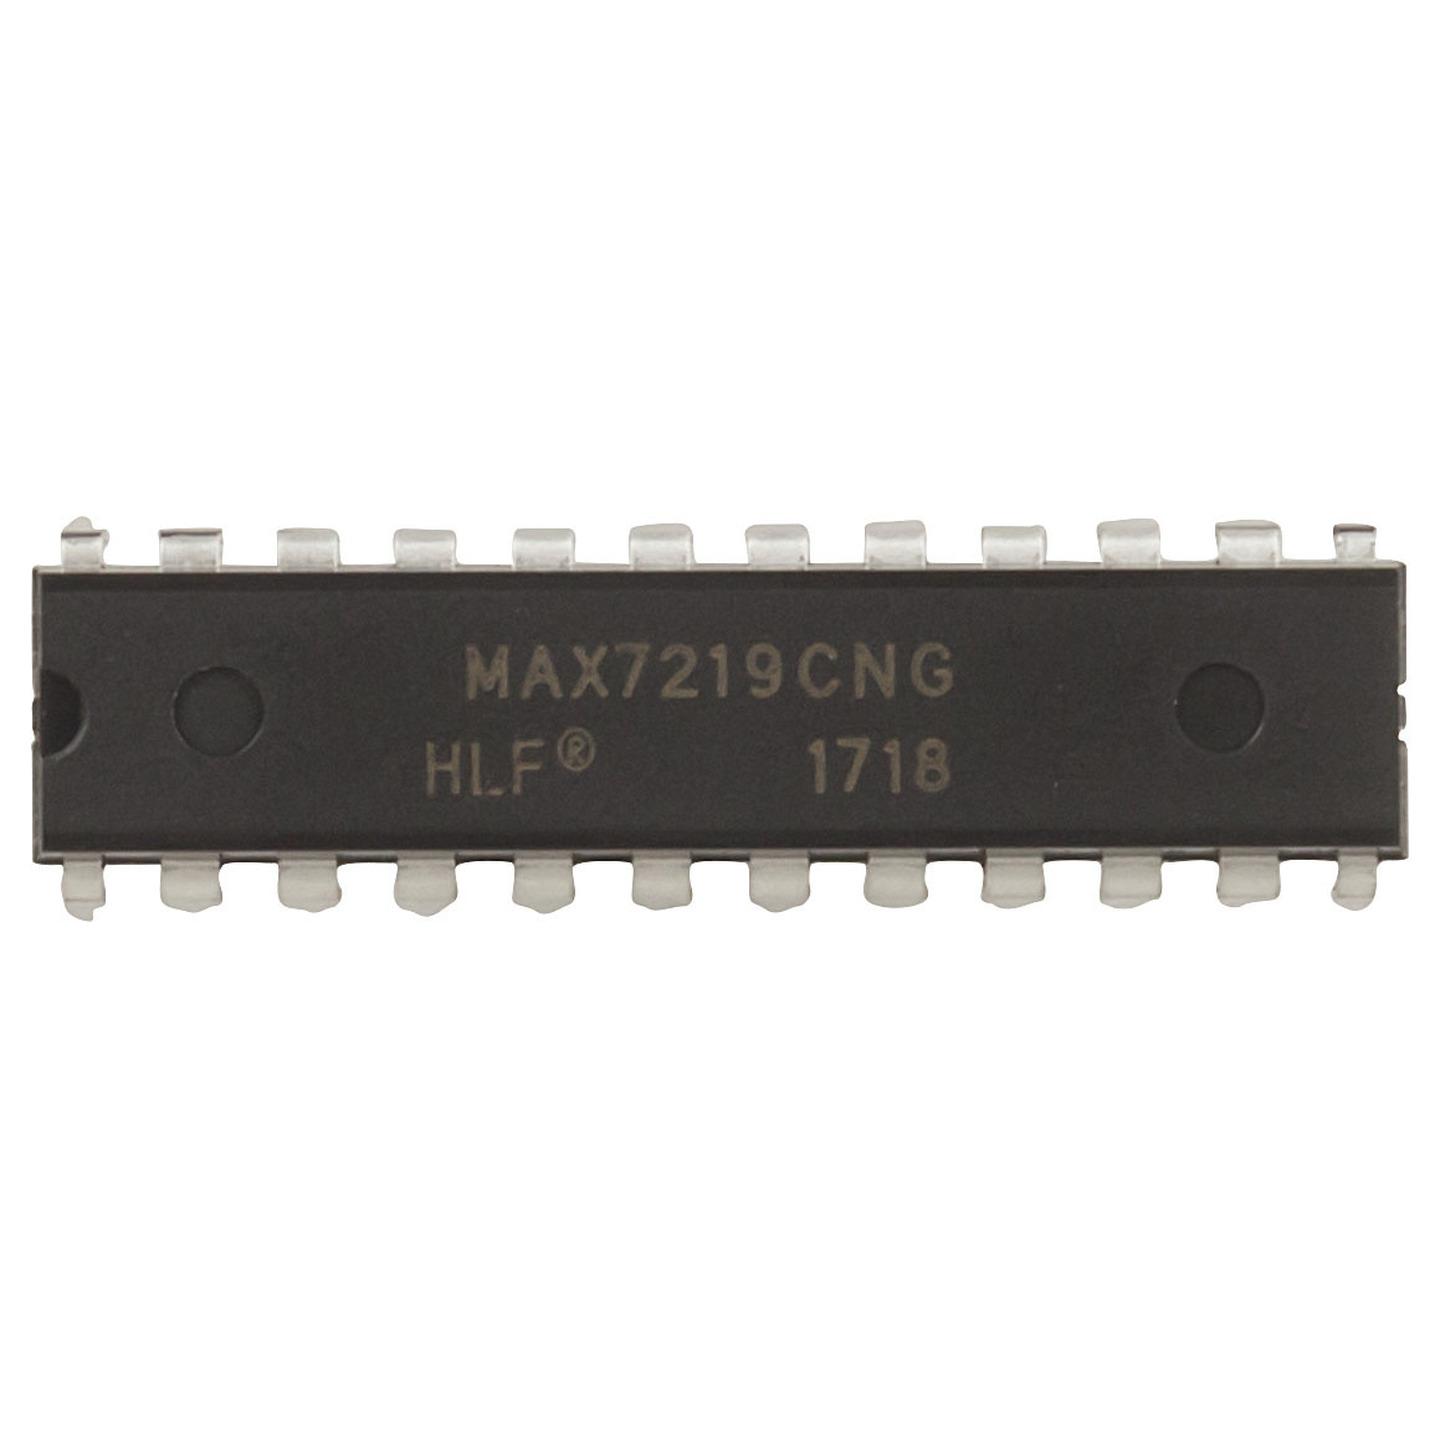 MAX7219 LED Matrix Driver IC